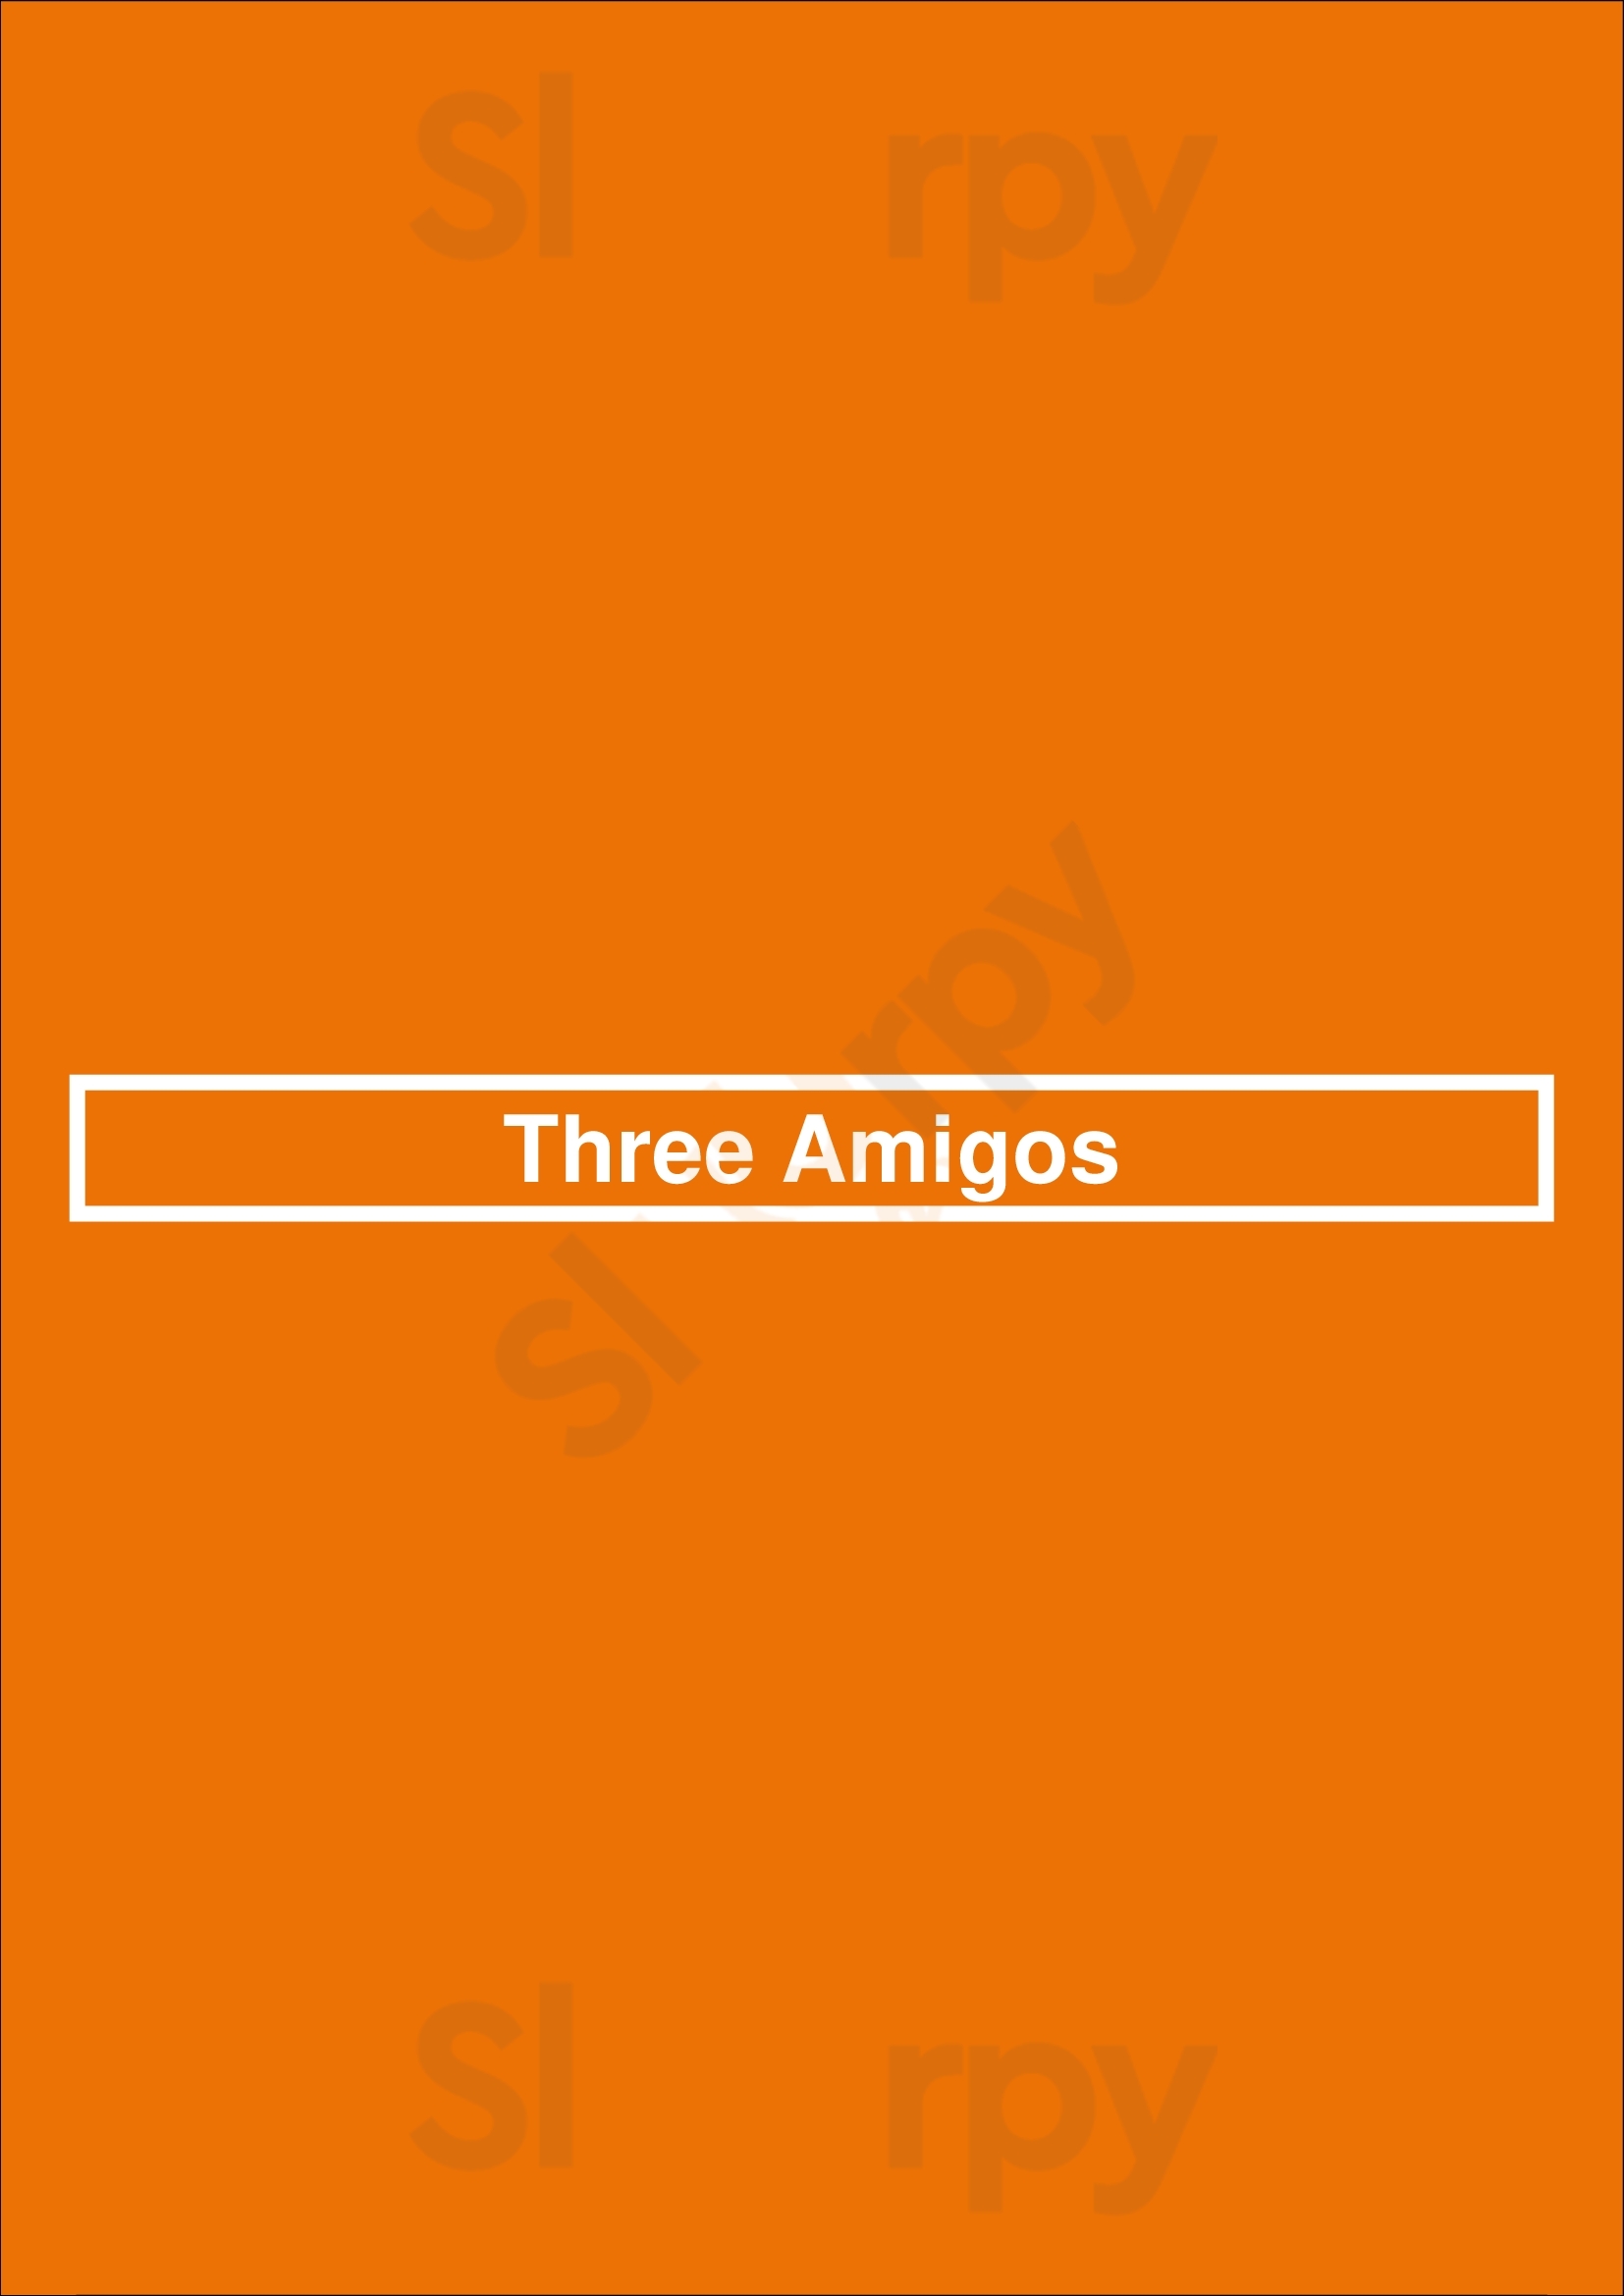 Three Amigos Charlotte Menu - 1